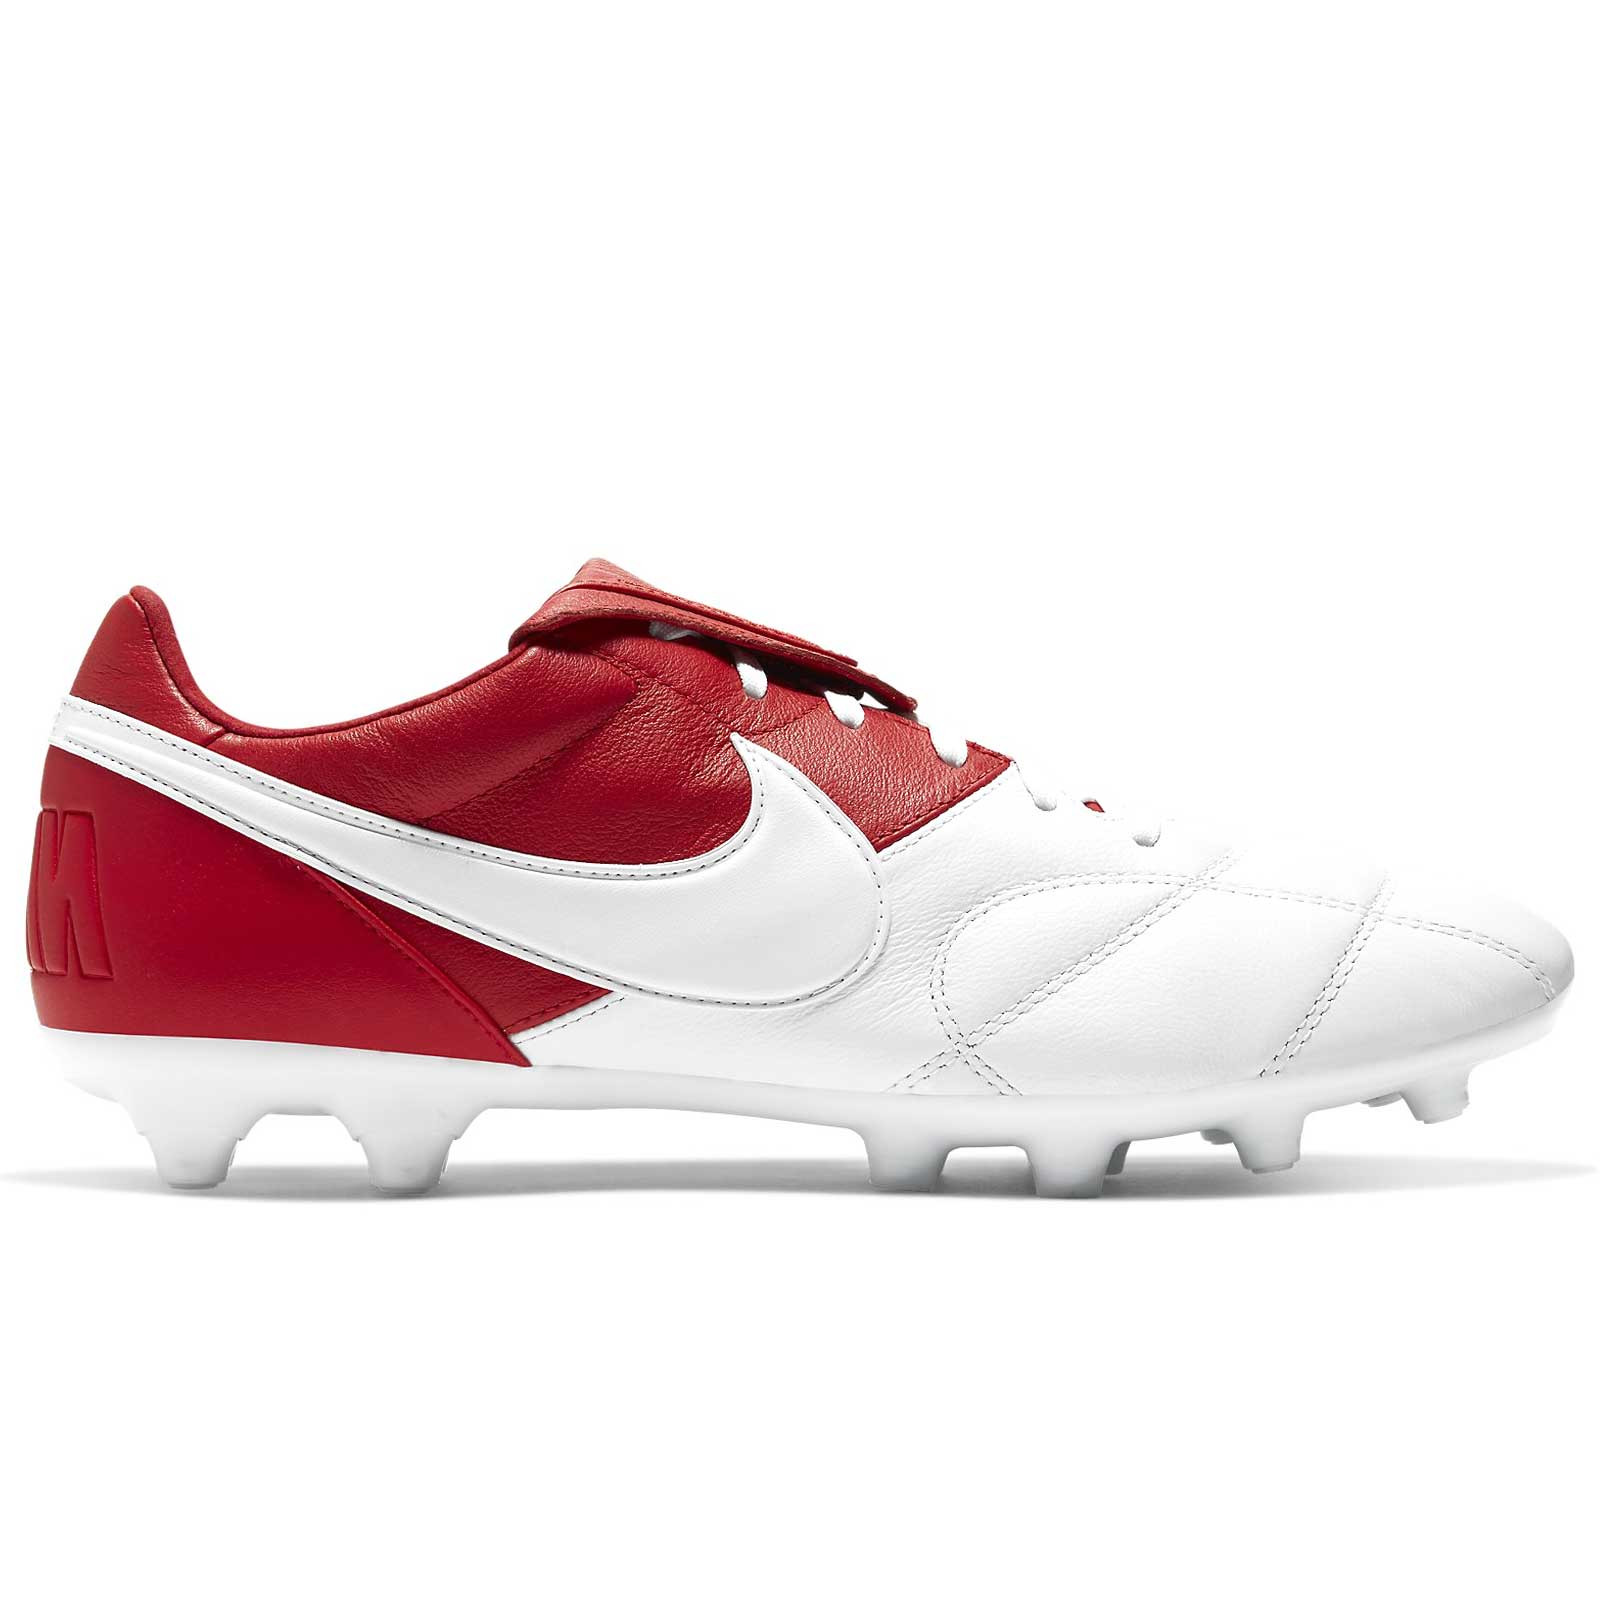 maquinilla de afeitar sol Juicio Botas Nike Premier 2 FG blancas y rojas | futbolmania